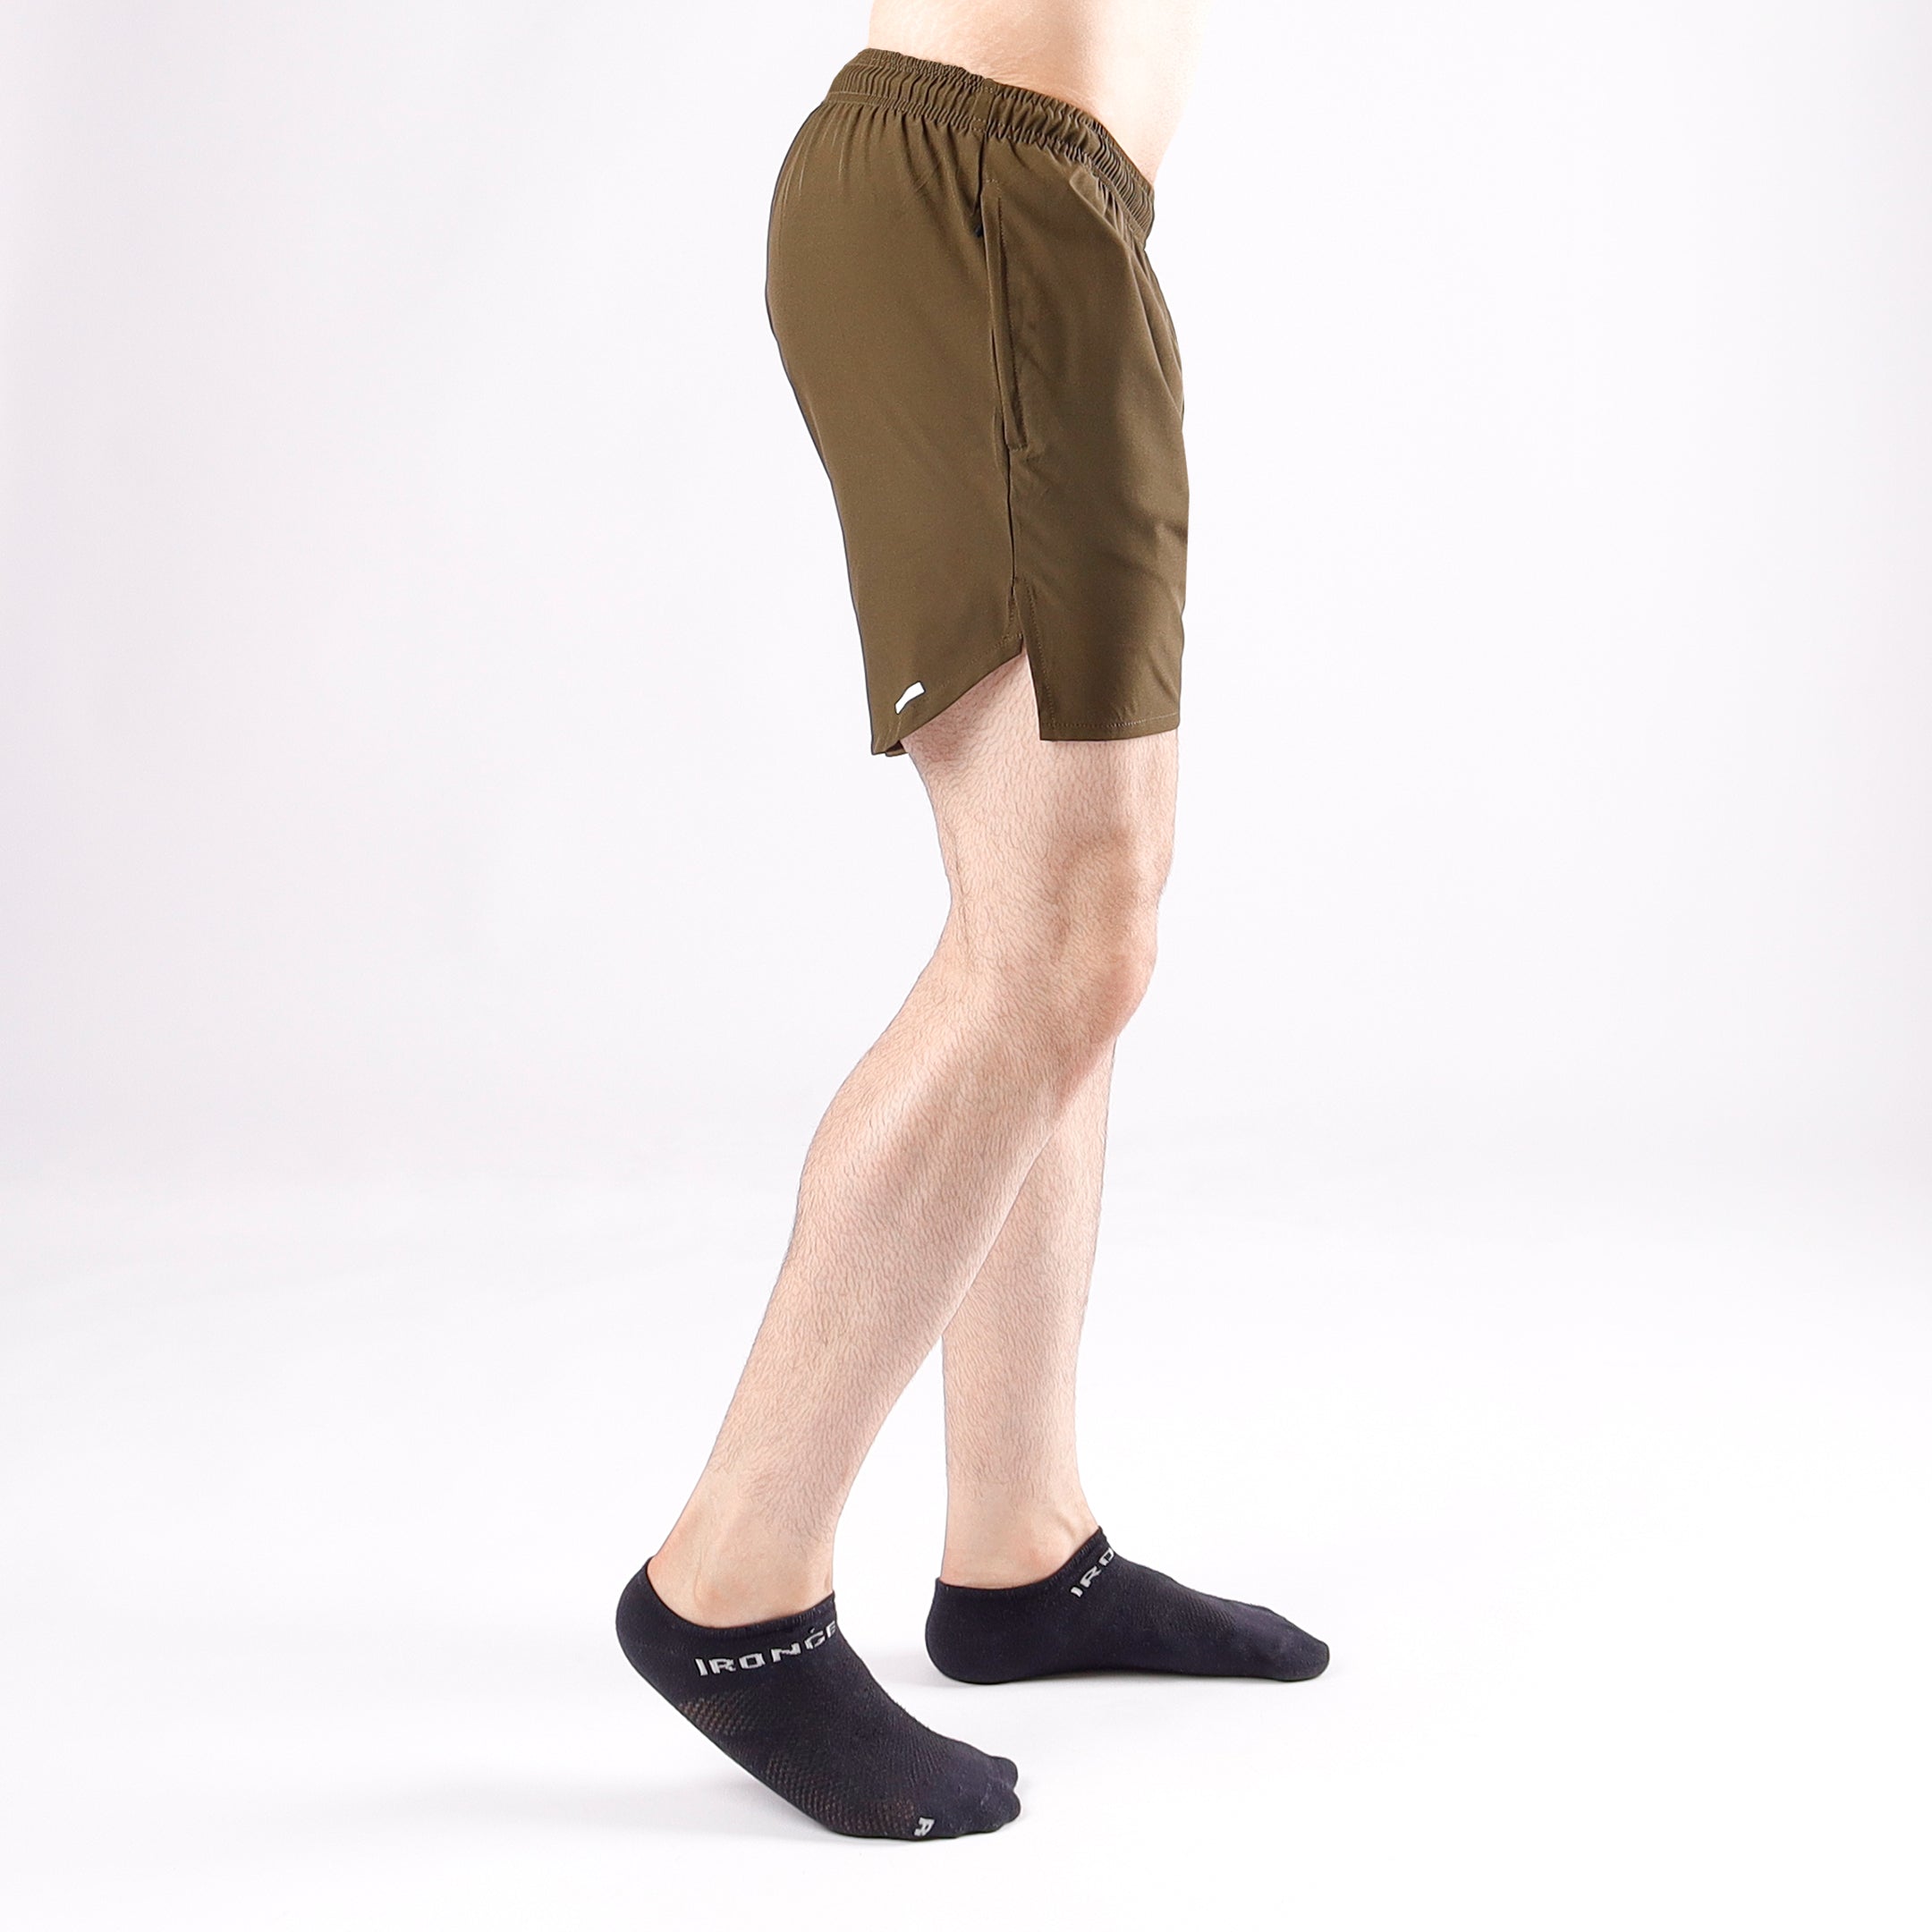 QuadZilla 5" Shorts